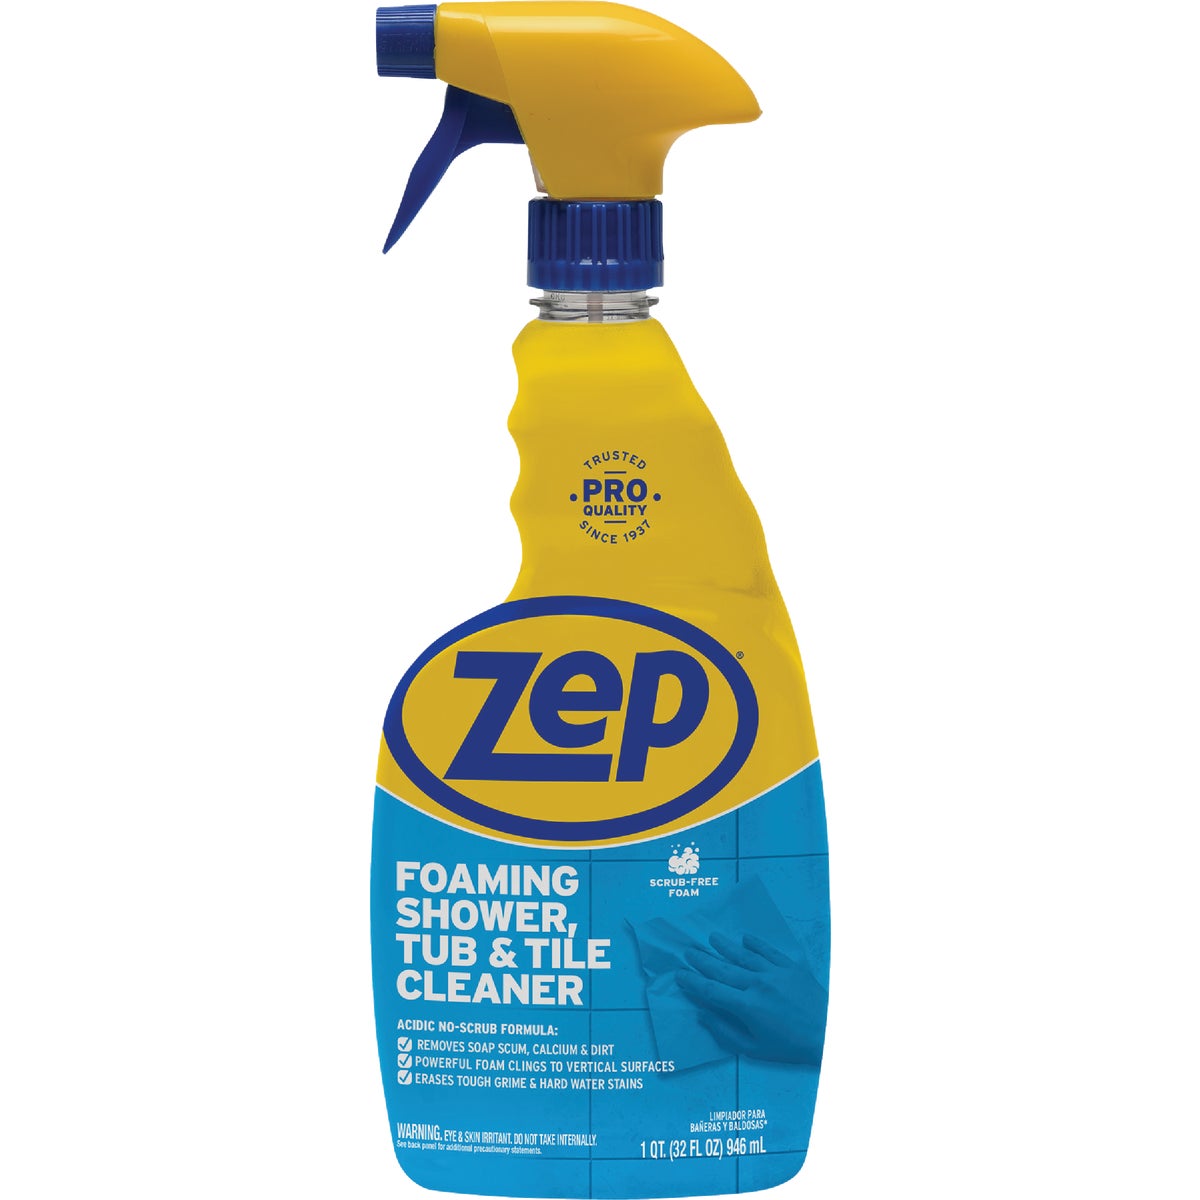 Zep Foaming Shower, Tub & Tile Cleaner